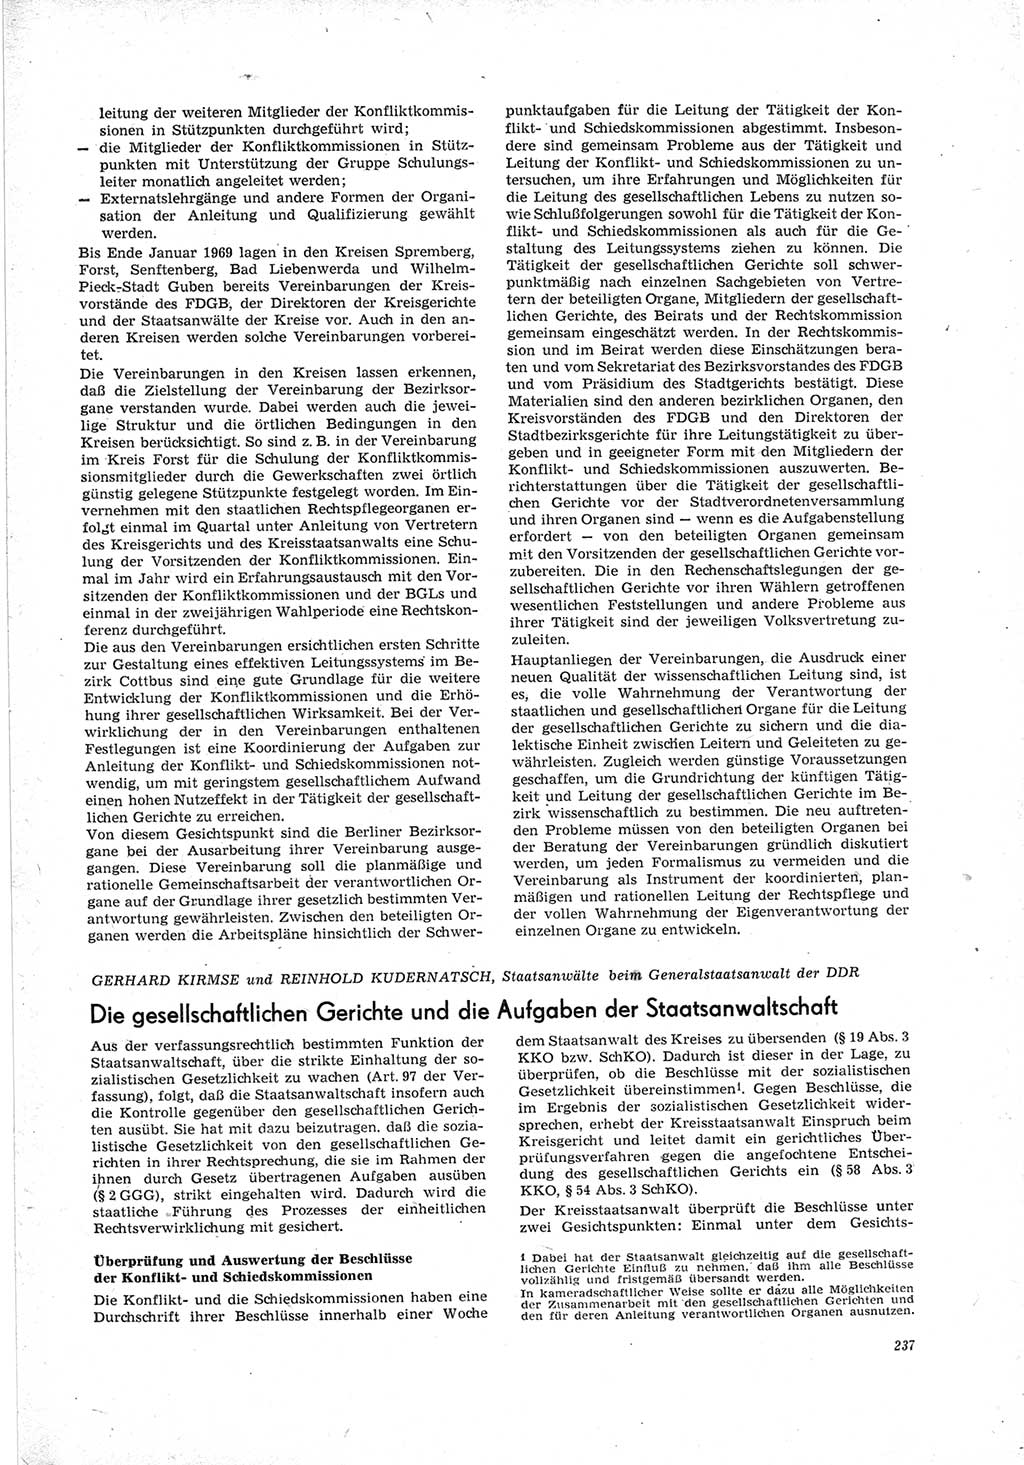 Neue Justiz (NJ), Zeitschrift für Recht und Rechtswissenschaft [Deutsche Demokratische Republik (DDR)], 23. Jahrgang 1969, Seite 237 (NJ DDR 1969, S. 237)